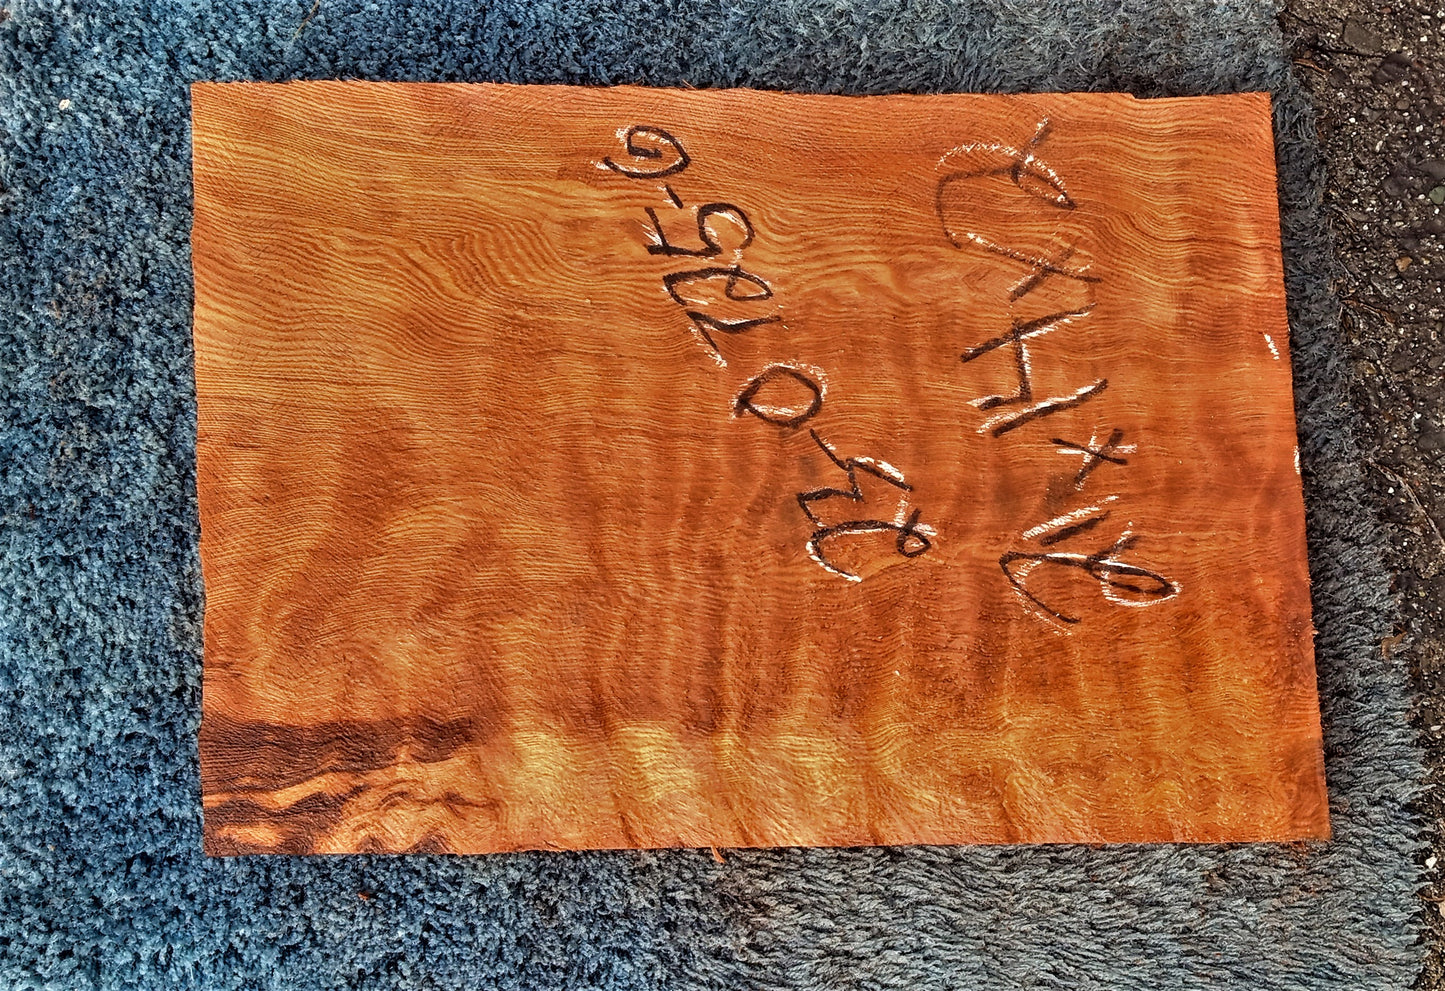 Quilted redwood | guitar billet | wood turning | DIY crafts | g23-0725